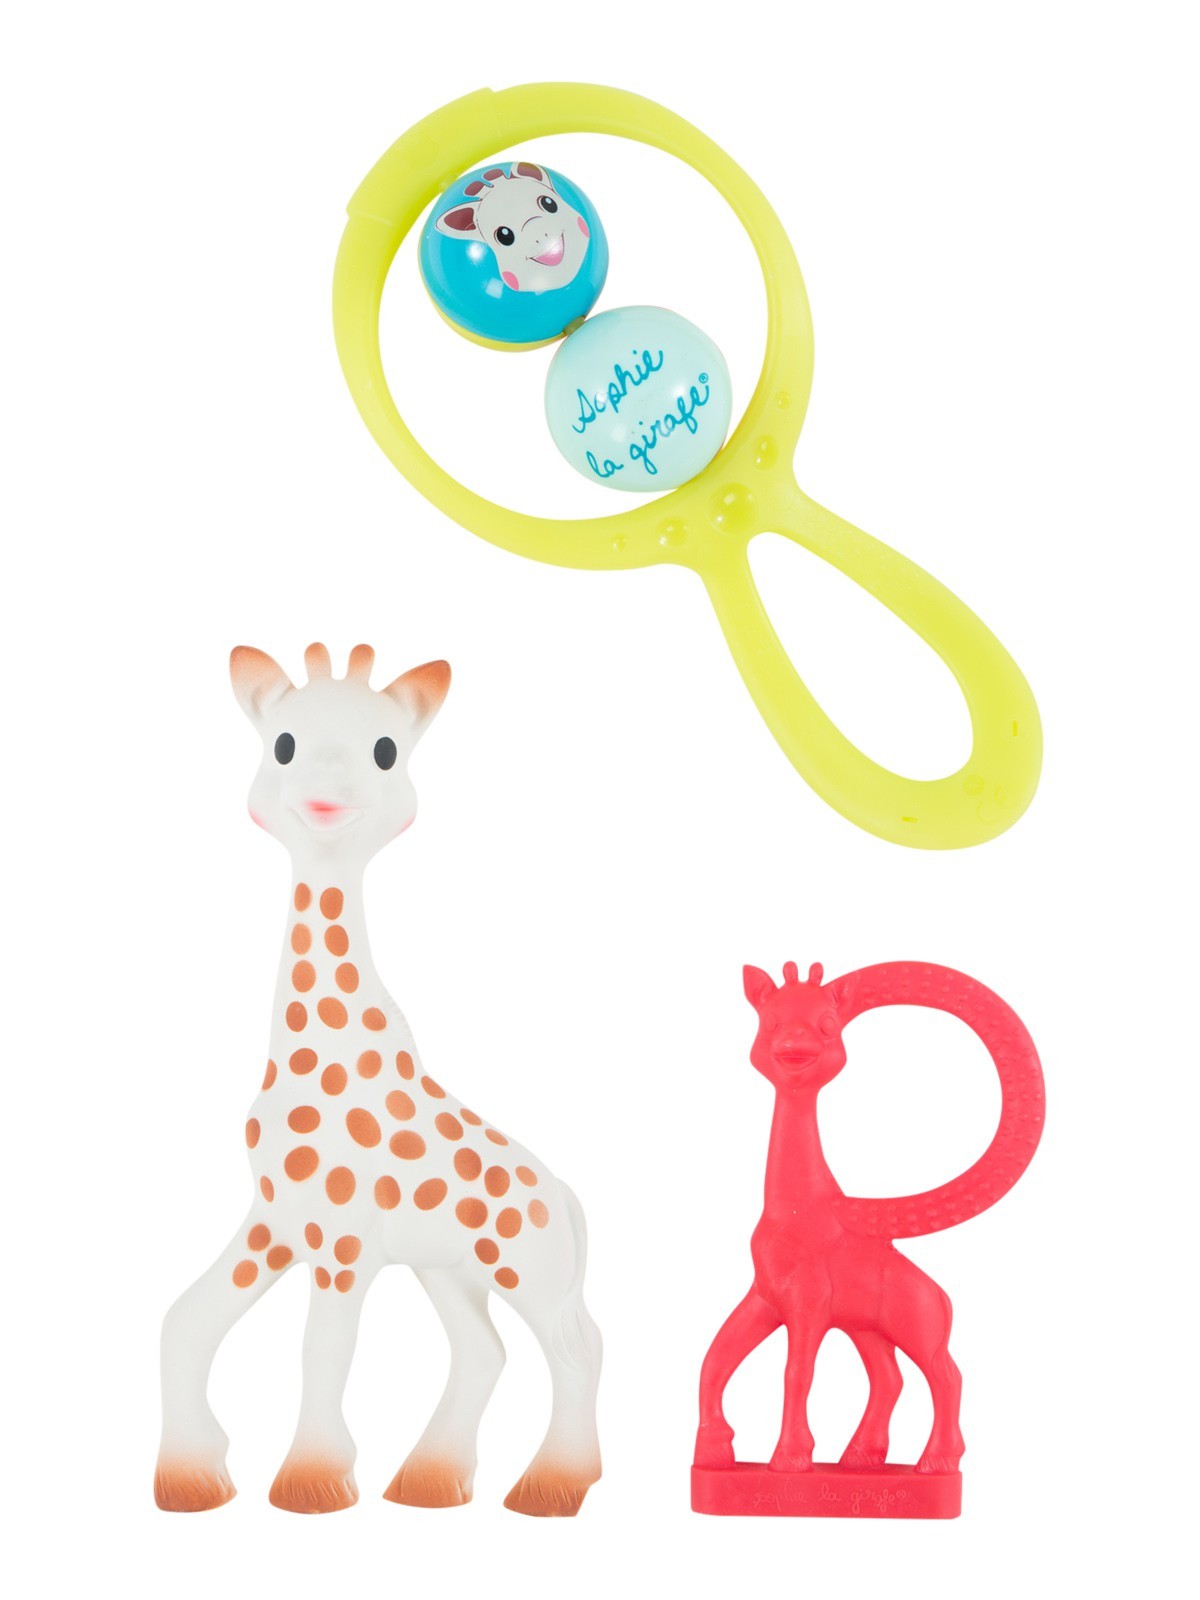 Lot jouets d'éveil sophie la girafe - DistriCenter